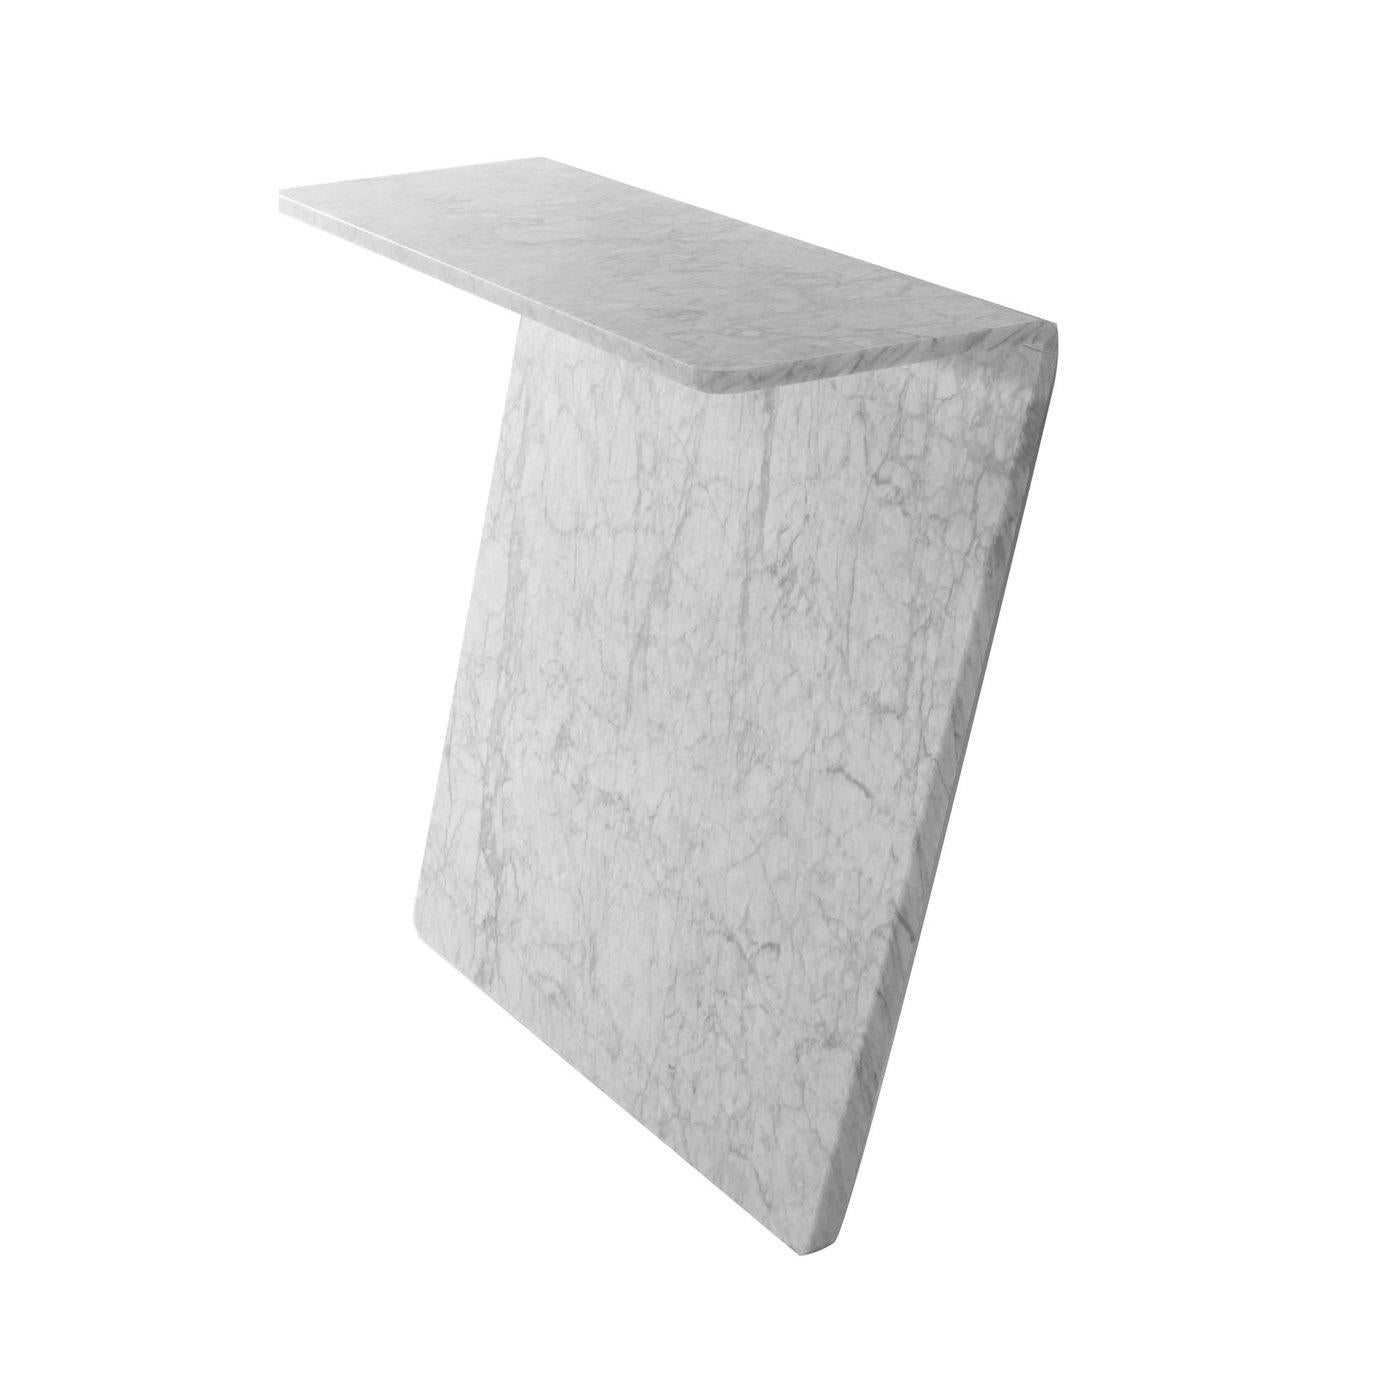 Konsole aus weißem Carrara-Marmor, matt poliert.